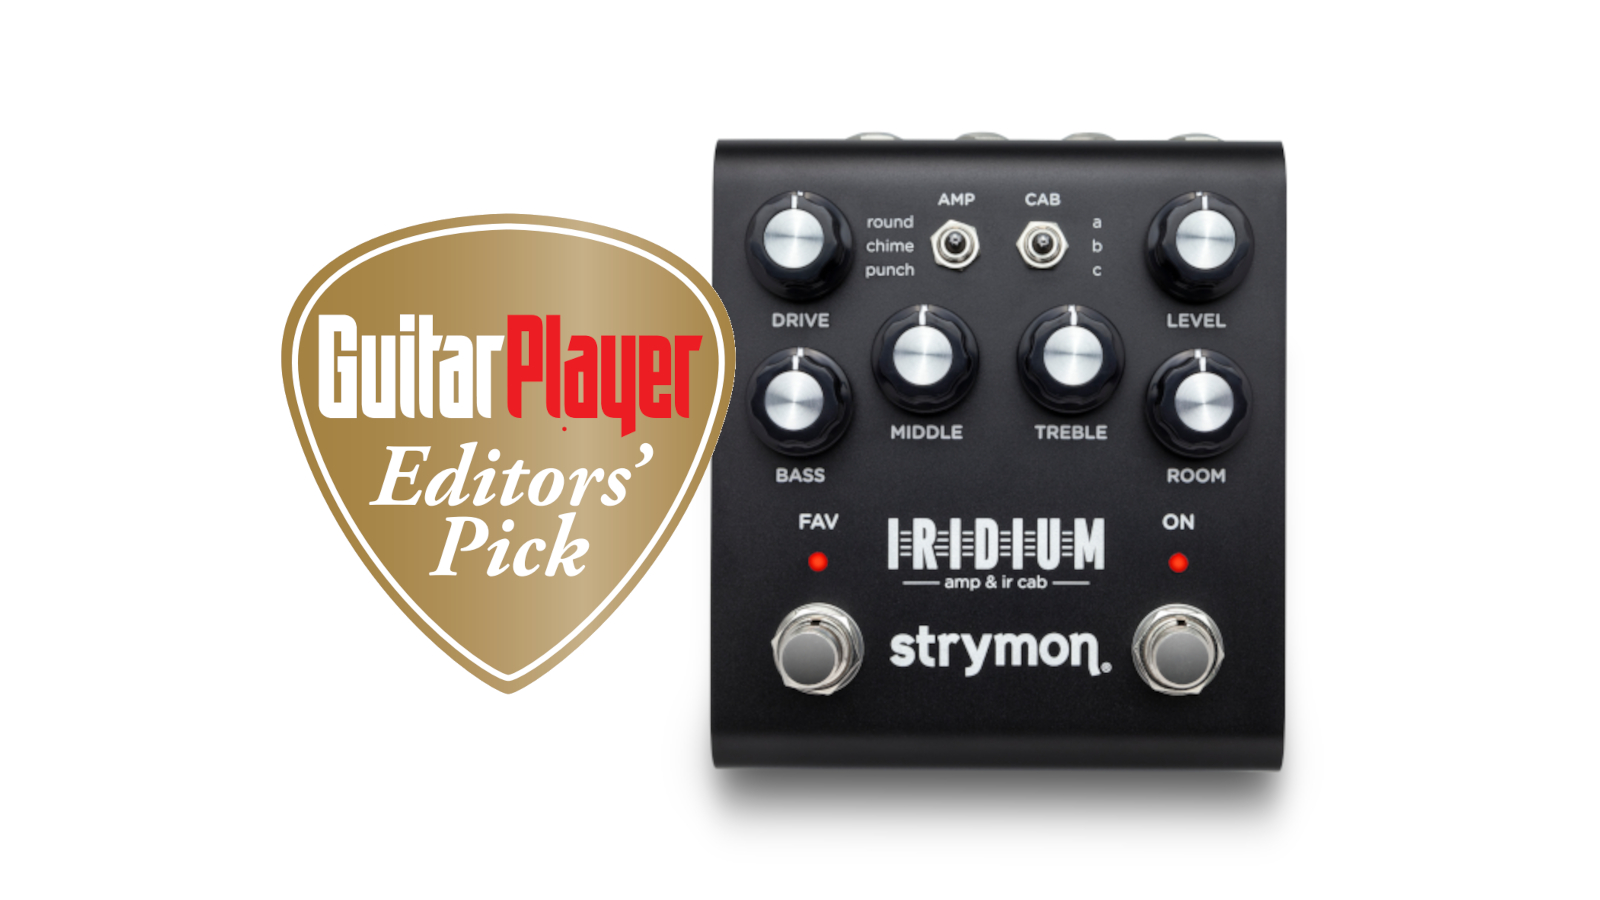 Strymon Iridium Amp and IR Cab Pedal Review | GuitarPlayer